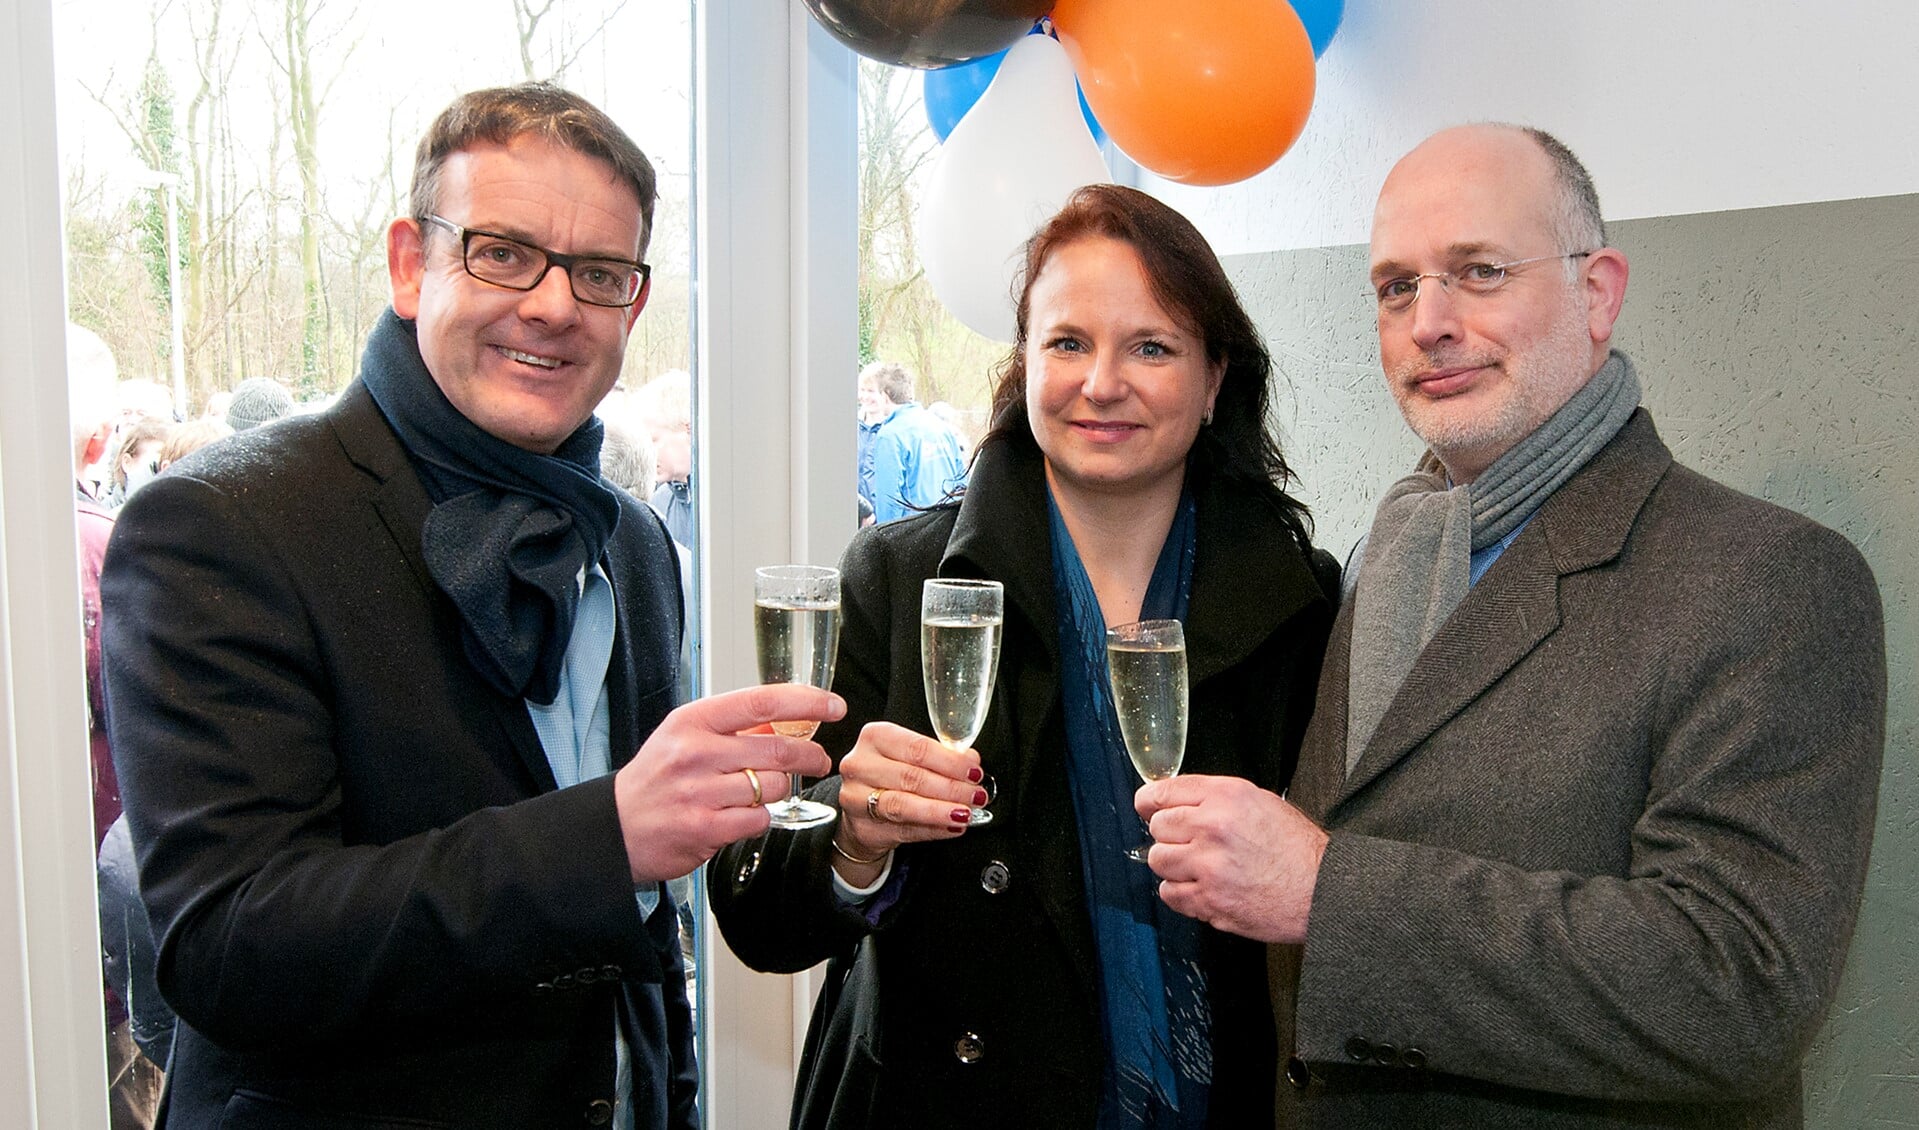 De wethouders Stemerdink en Rozenberg openden het nieuwe gebouw samen met Jan Jaap van Leusden van VEO (foto: Michel Groen).